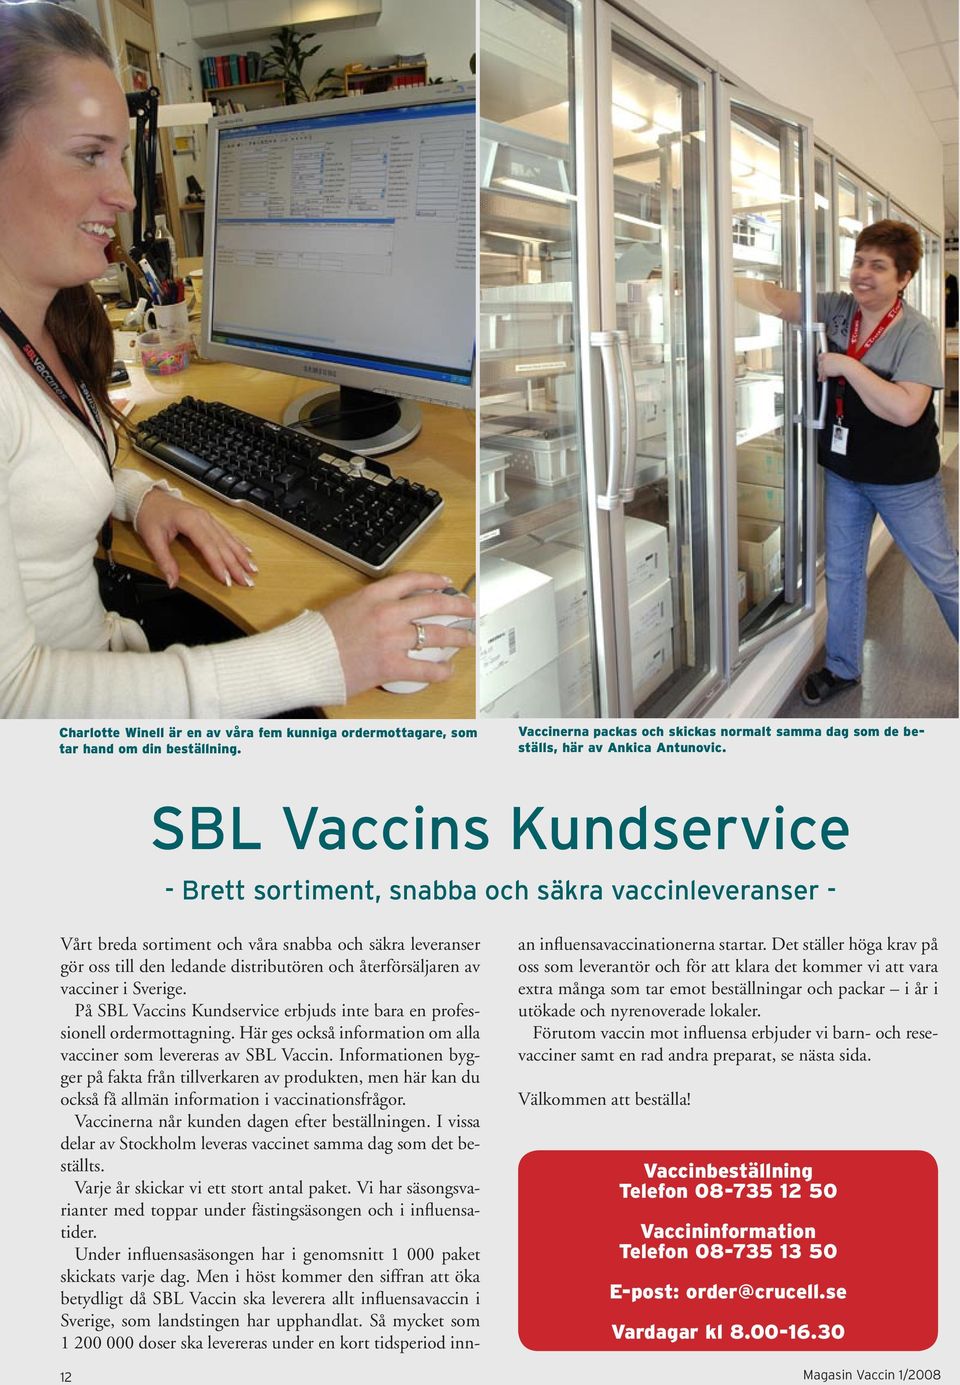 vacciner i Sverige. På SBL Vaccins Kundservice erbjuds inte bara en professionell ordermottagning. Här ges också information om alla vacciner som levereras av SBL Vaccin.